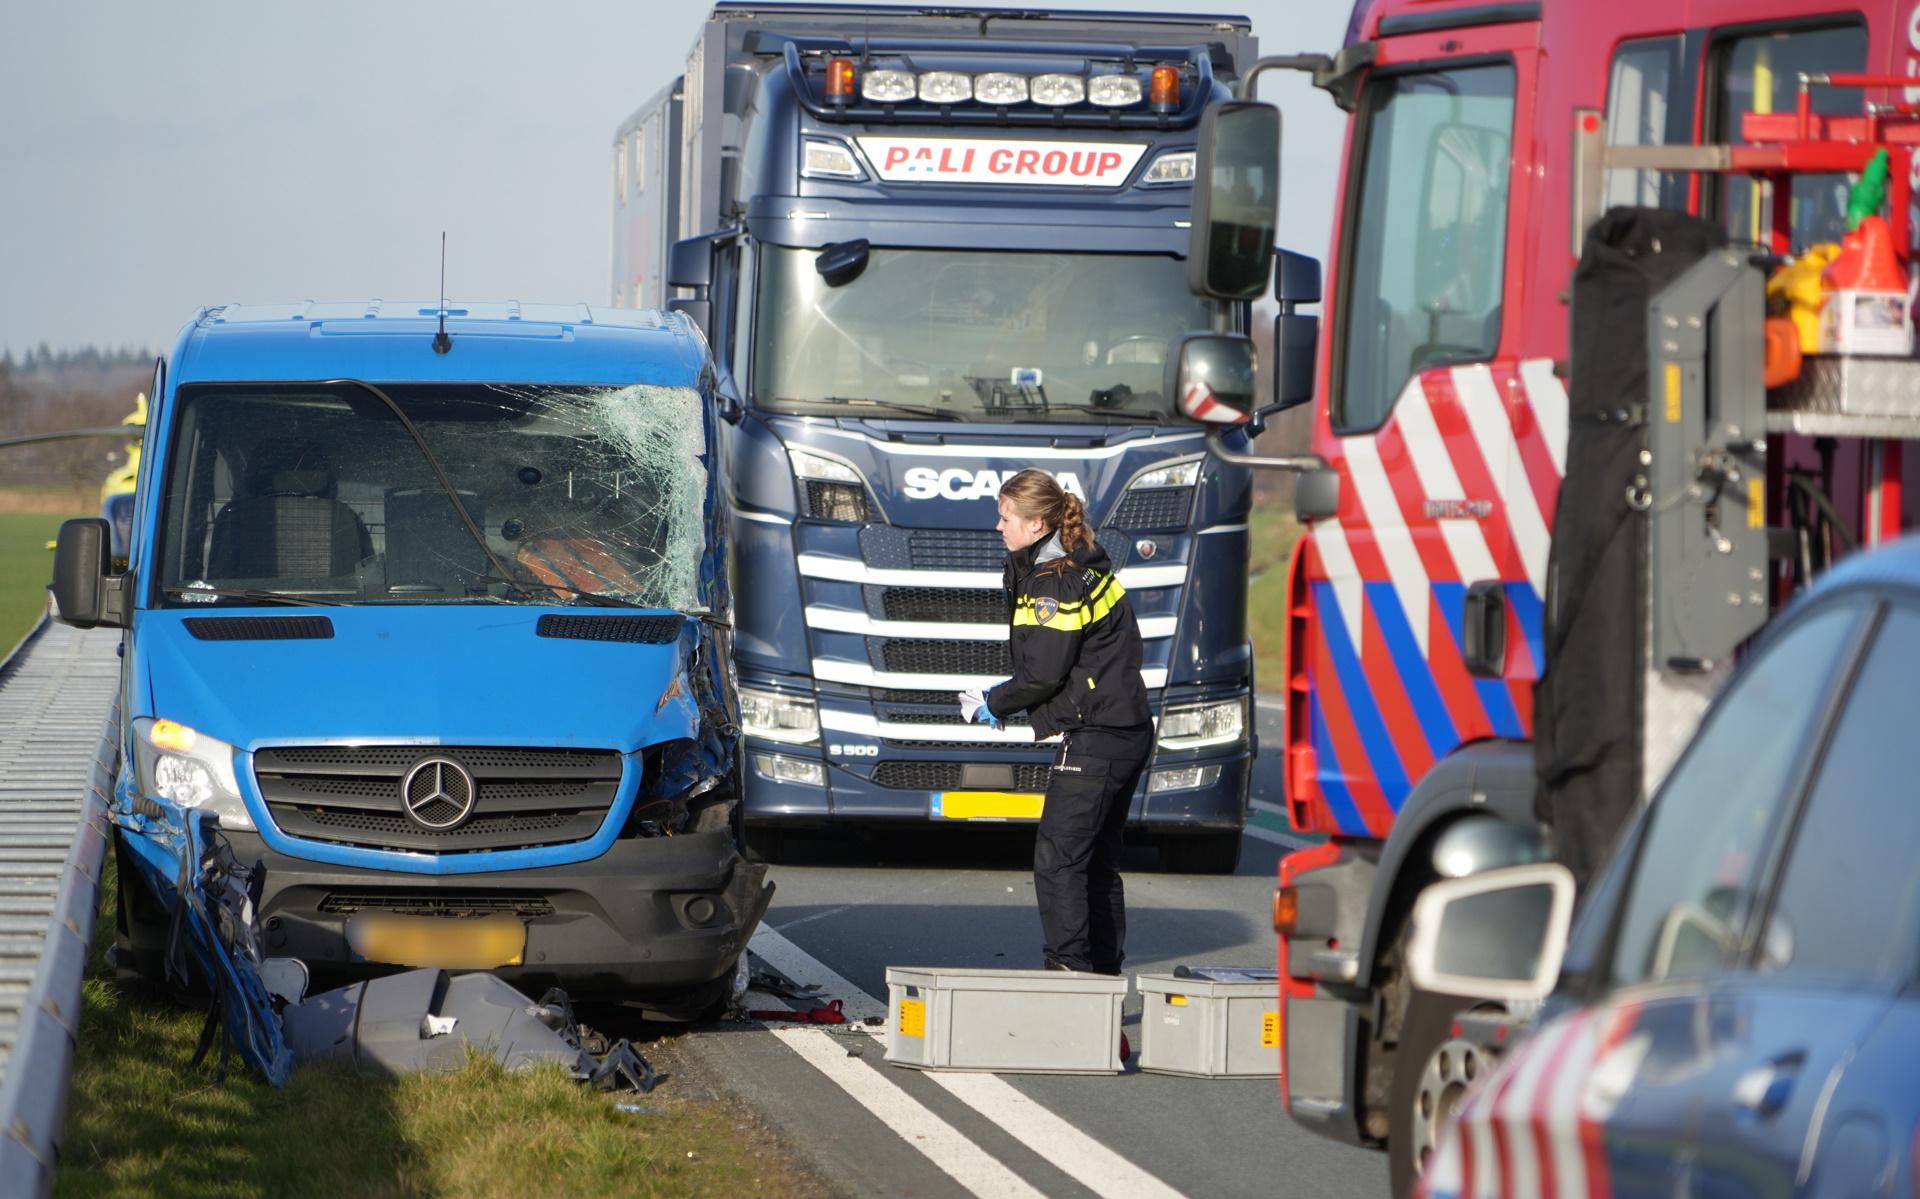 Molester Lagere school Moskee N34 bij Emmen afgesloten na botsing tussen auto en vrachtwagen.  Automobilist raakt zwaargewond - Dagblad van het Noorden